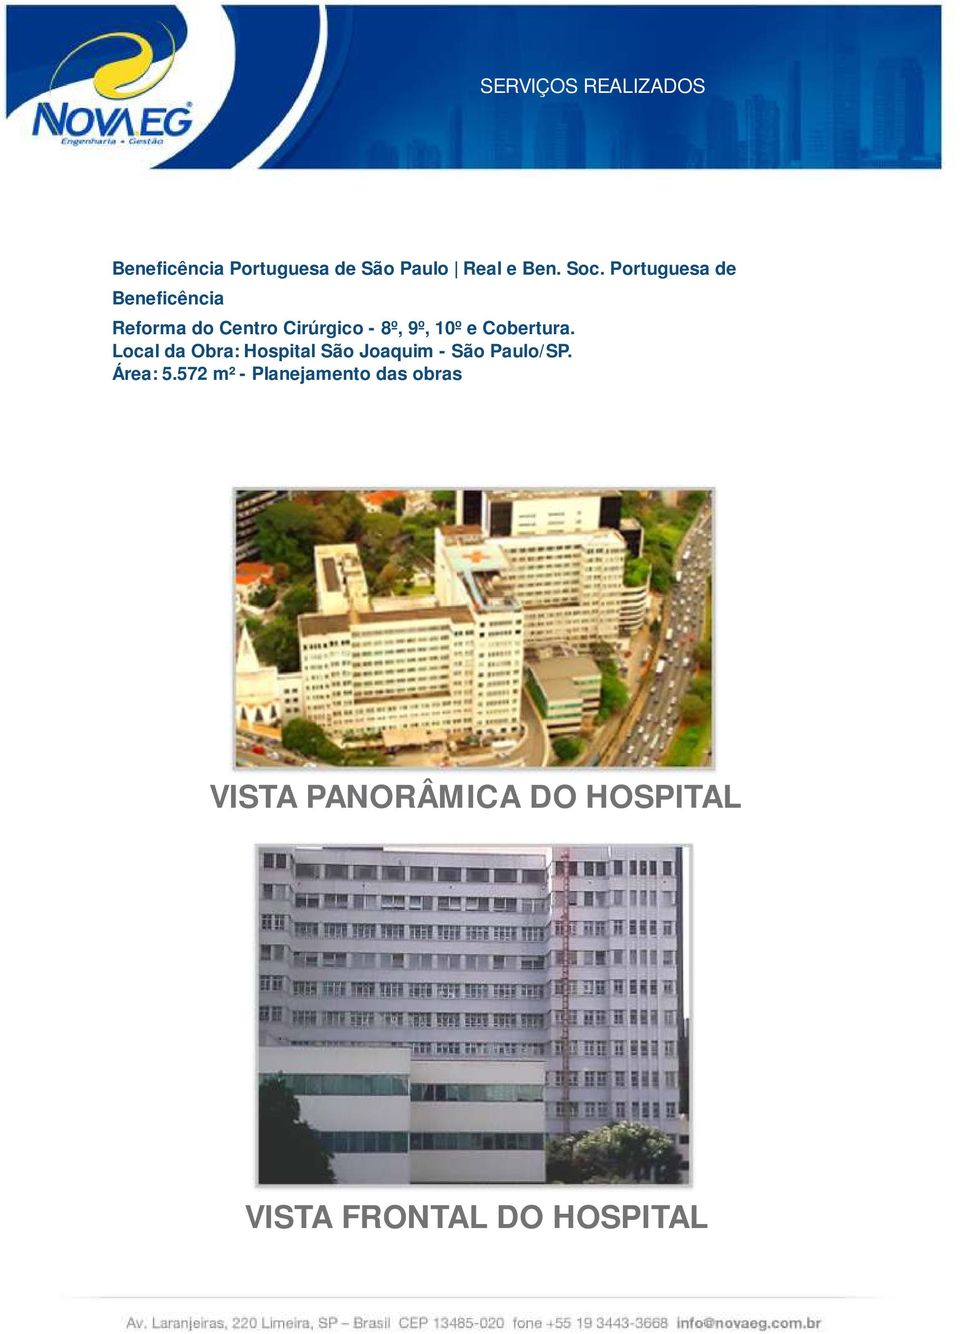 Cobertura. Local da Obra: Hospital São Joaquim - São Paulo/SP. Área: 5.